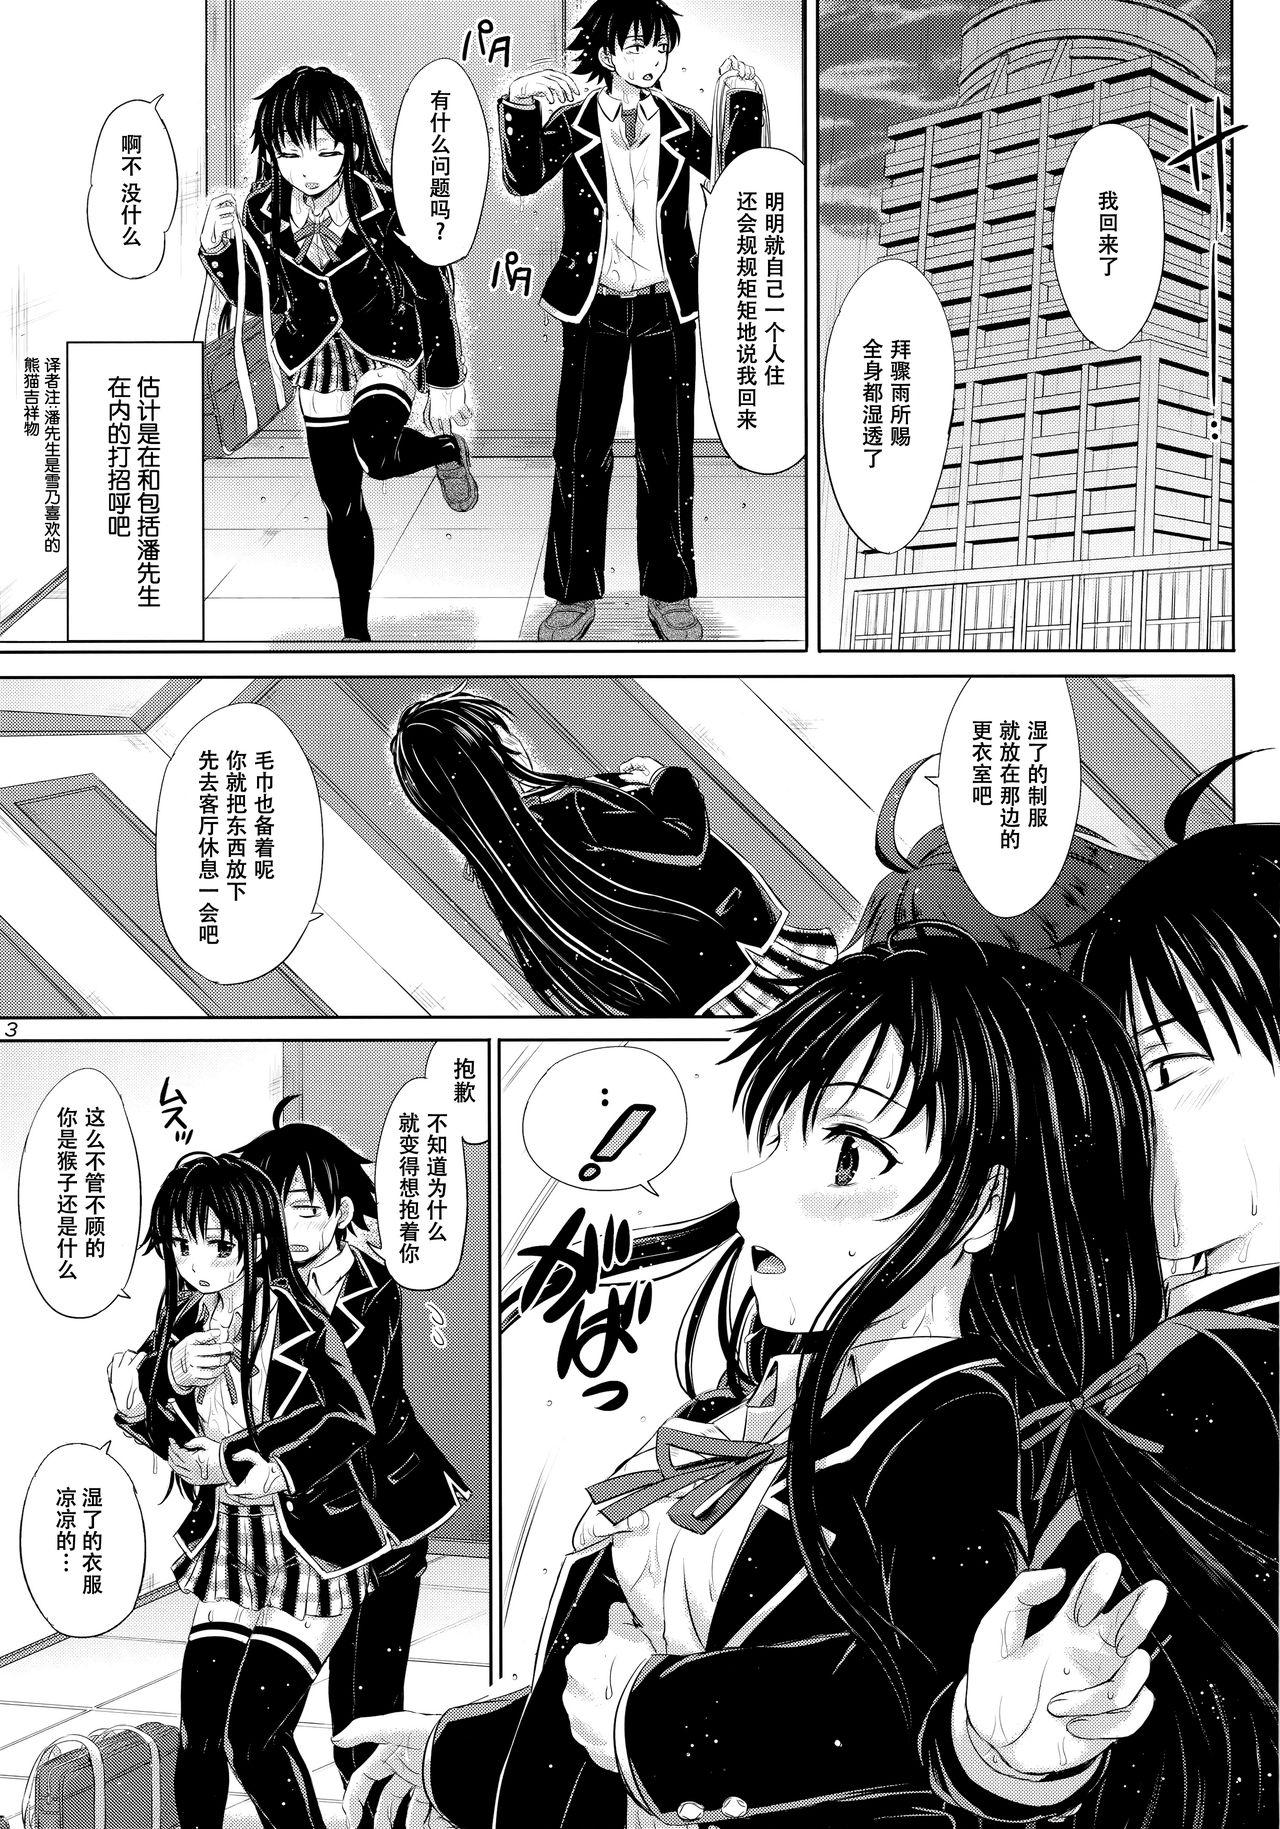 Menage Sanrenkyuu wa Asa made Nama Yukinon. - Yahari ore no seishun love come wa machigatteiru Hairy Sexy - Page 3